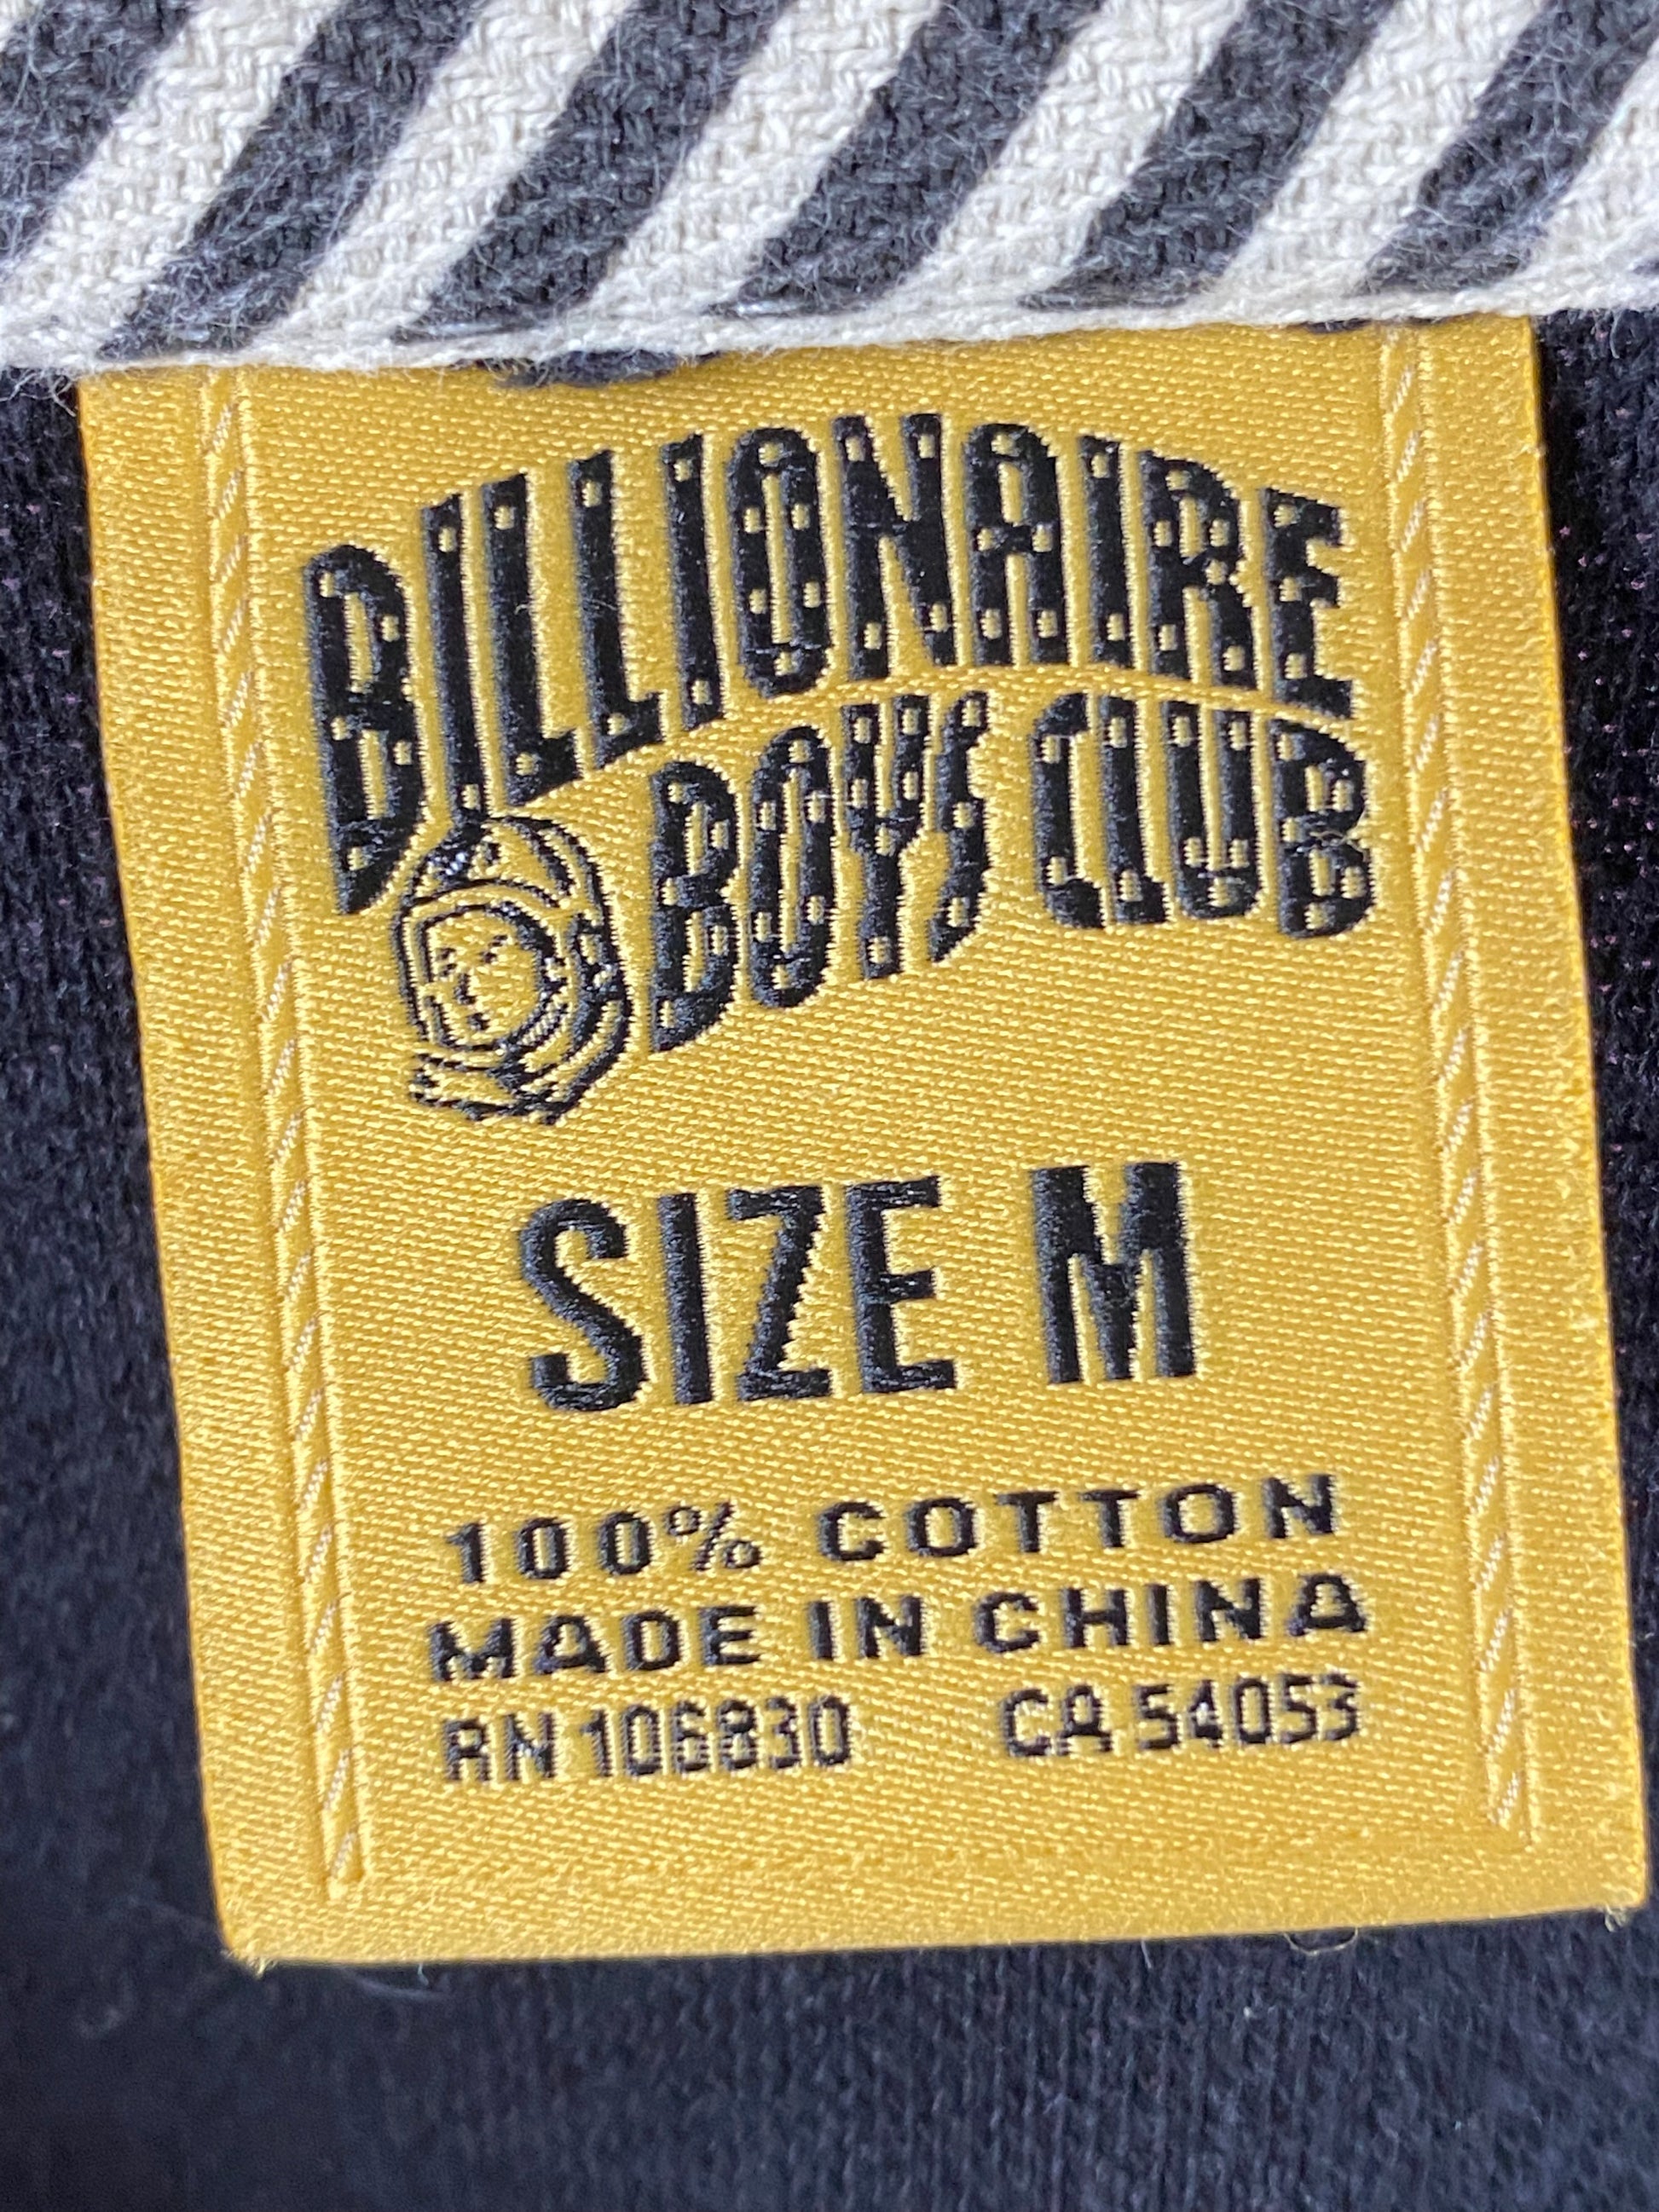 Billionaire Boys Club BBC Vintage Men's Polo Shirt - Large Black Cotton